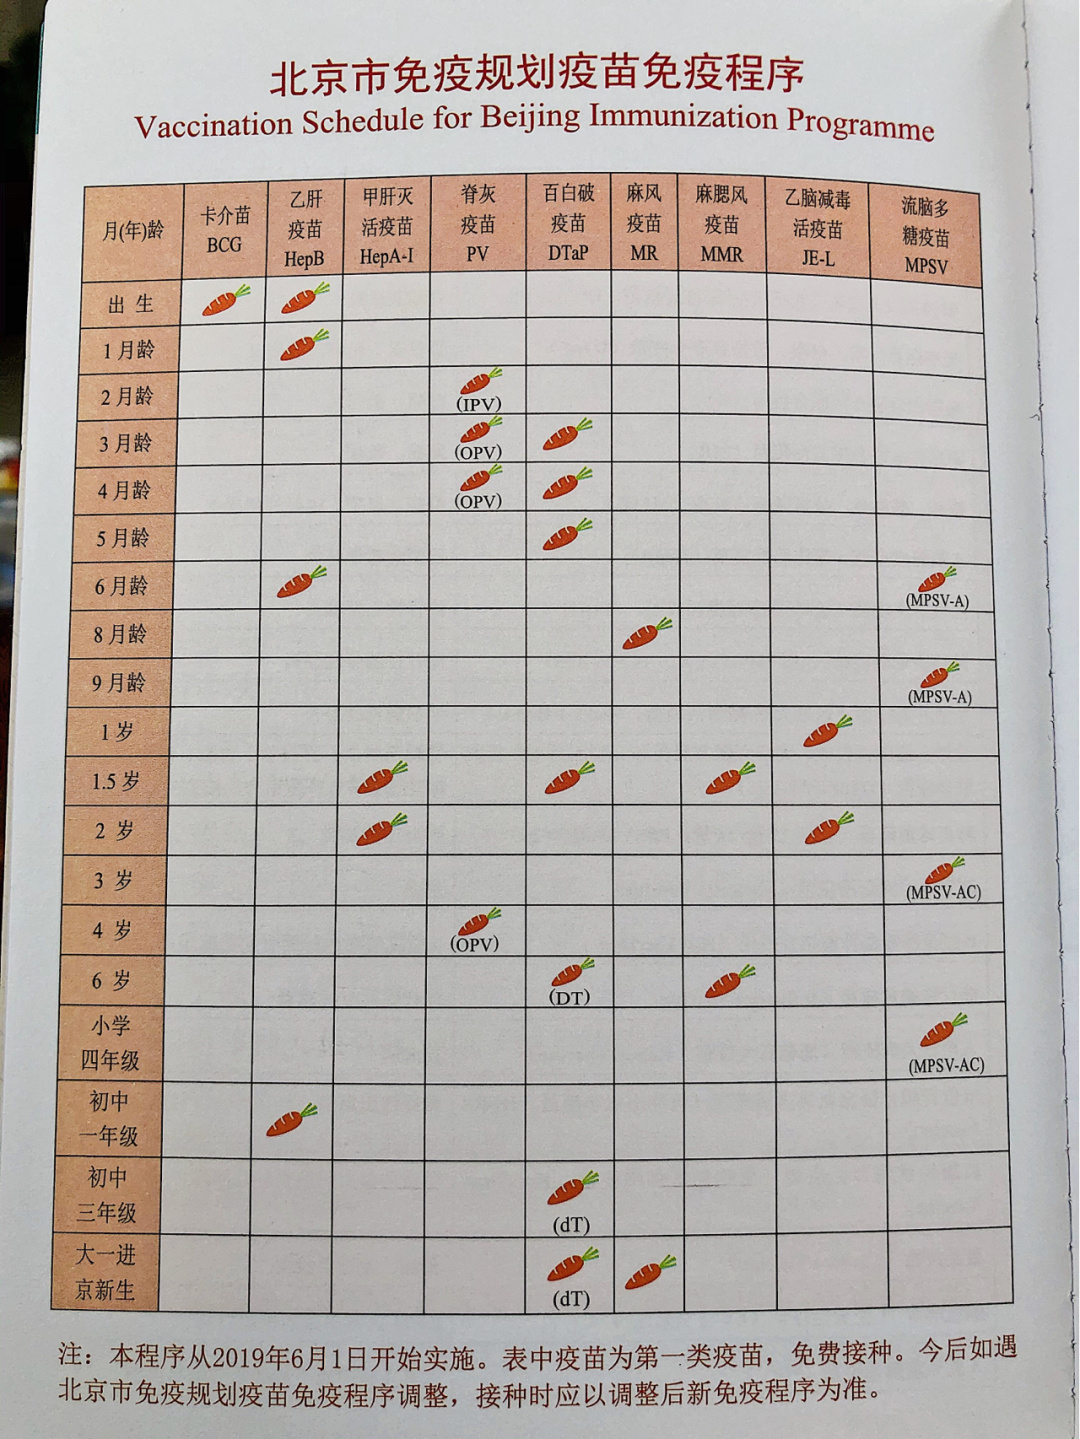 附:北京市免疫规划疫苗接种时间表